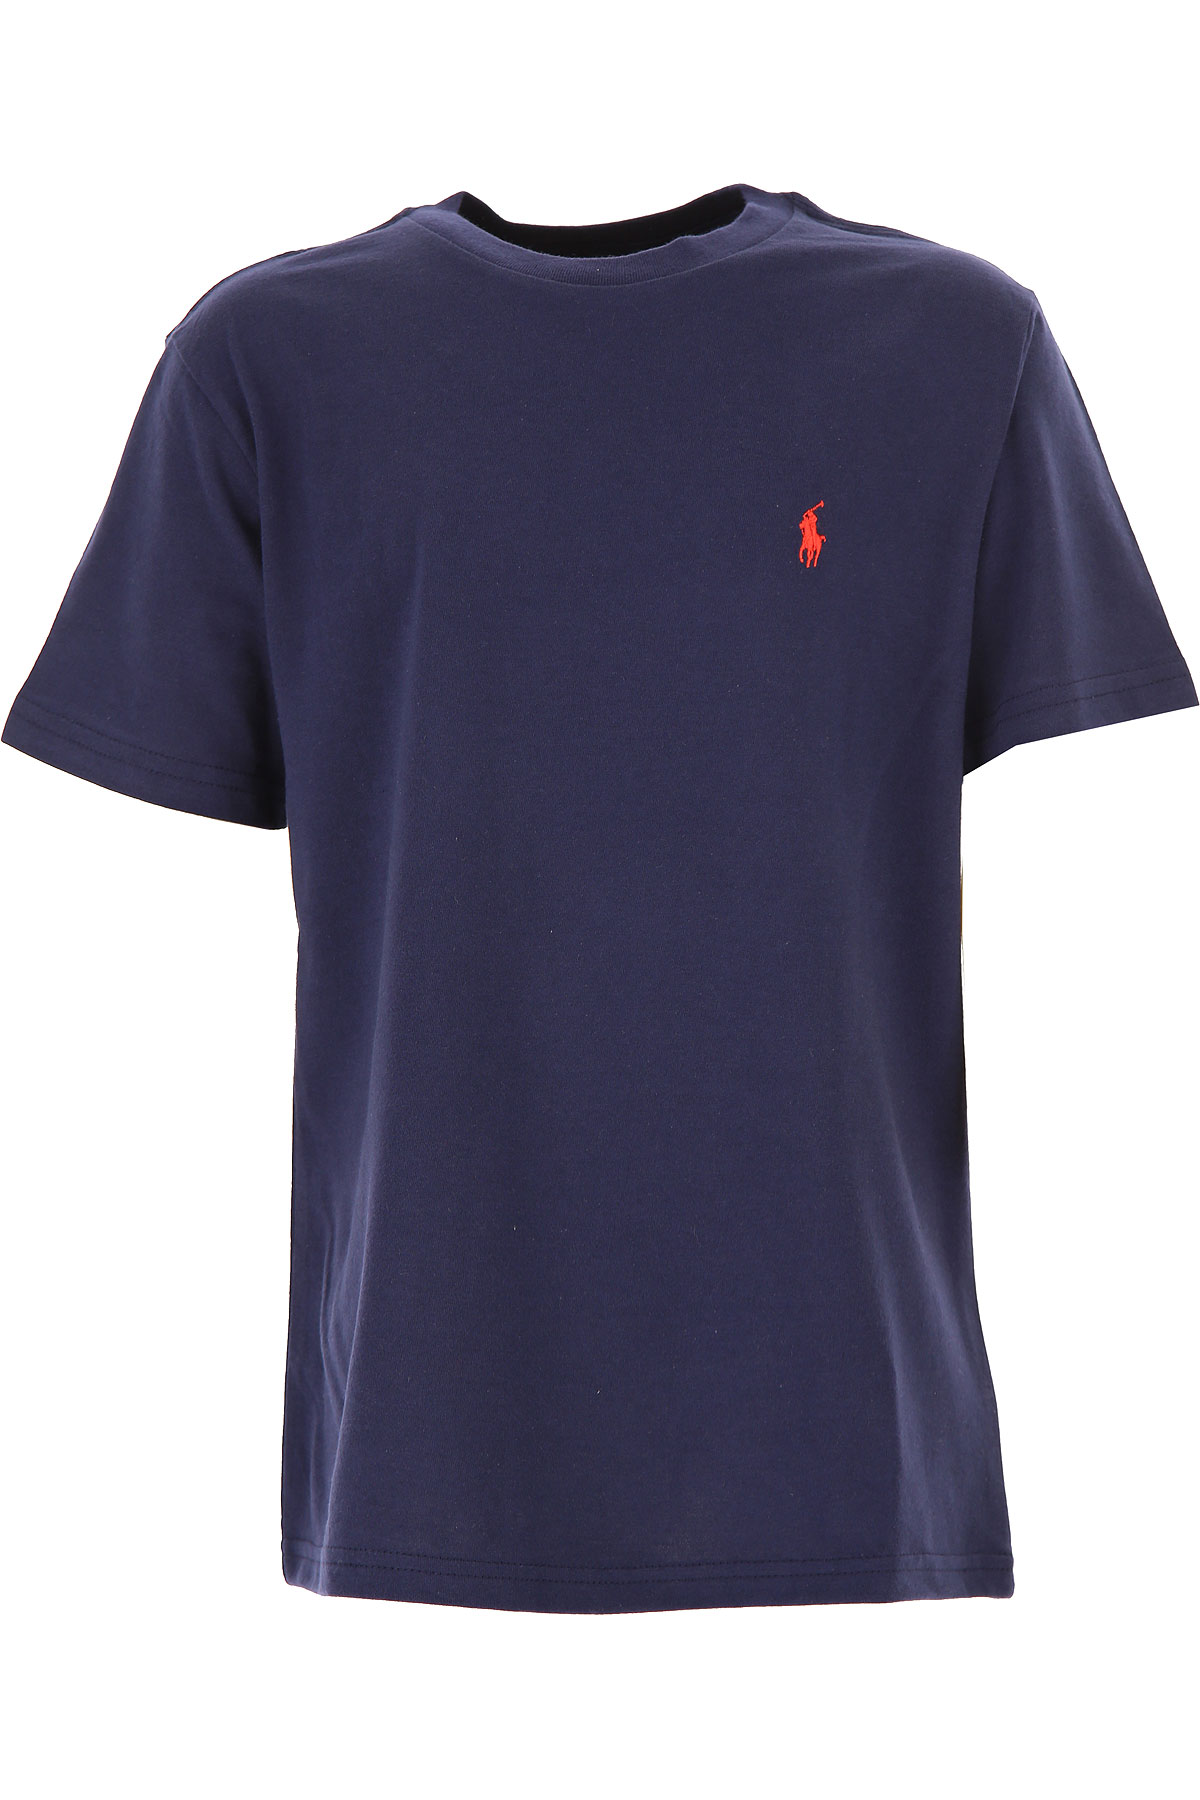 Ralph Lauren Kinder T-Shirt für Jungen, Blau, Baumwolle, 2017, L M S XL